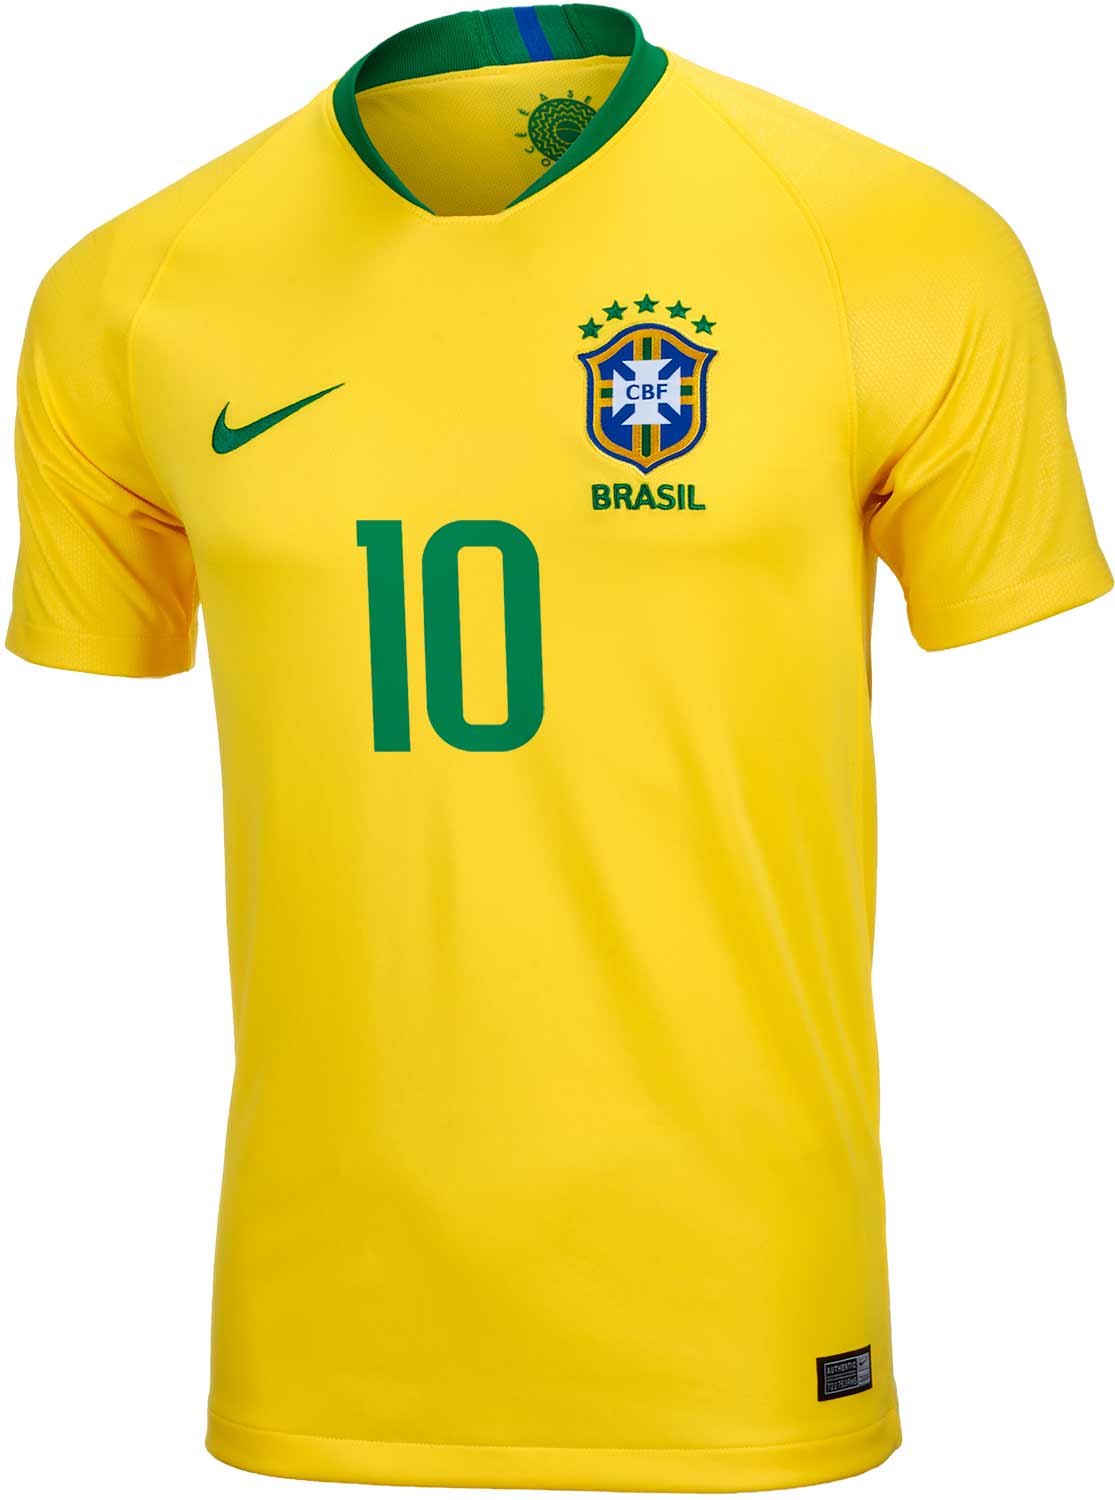 Kids Nike Neymar Jr Brazil Home Jersey 